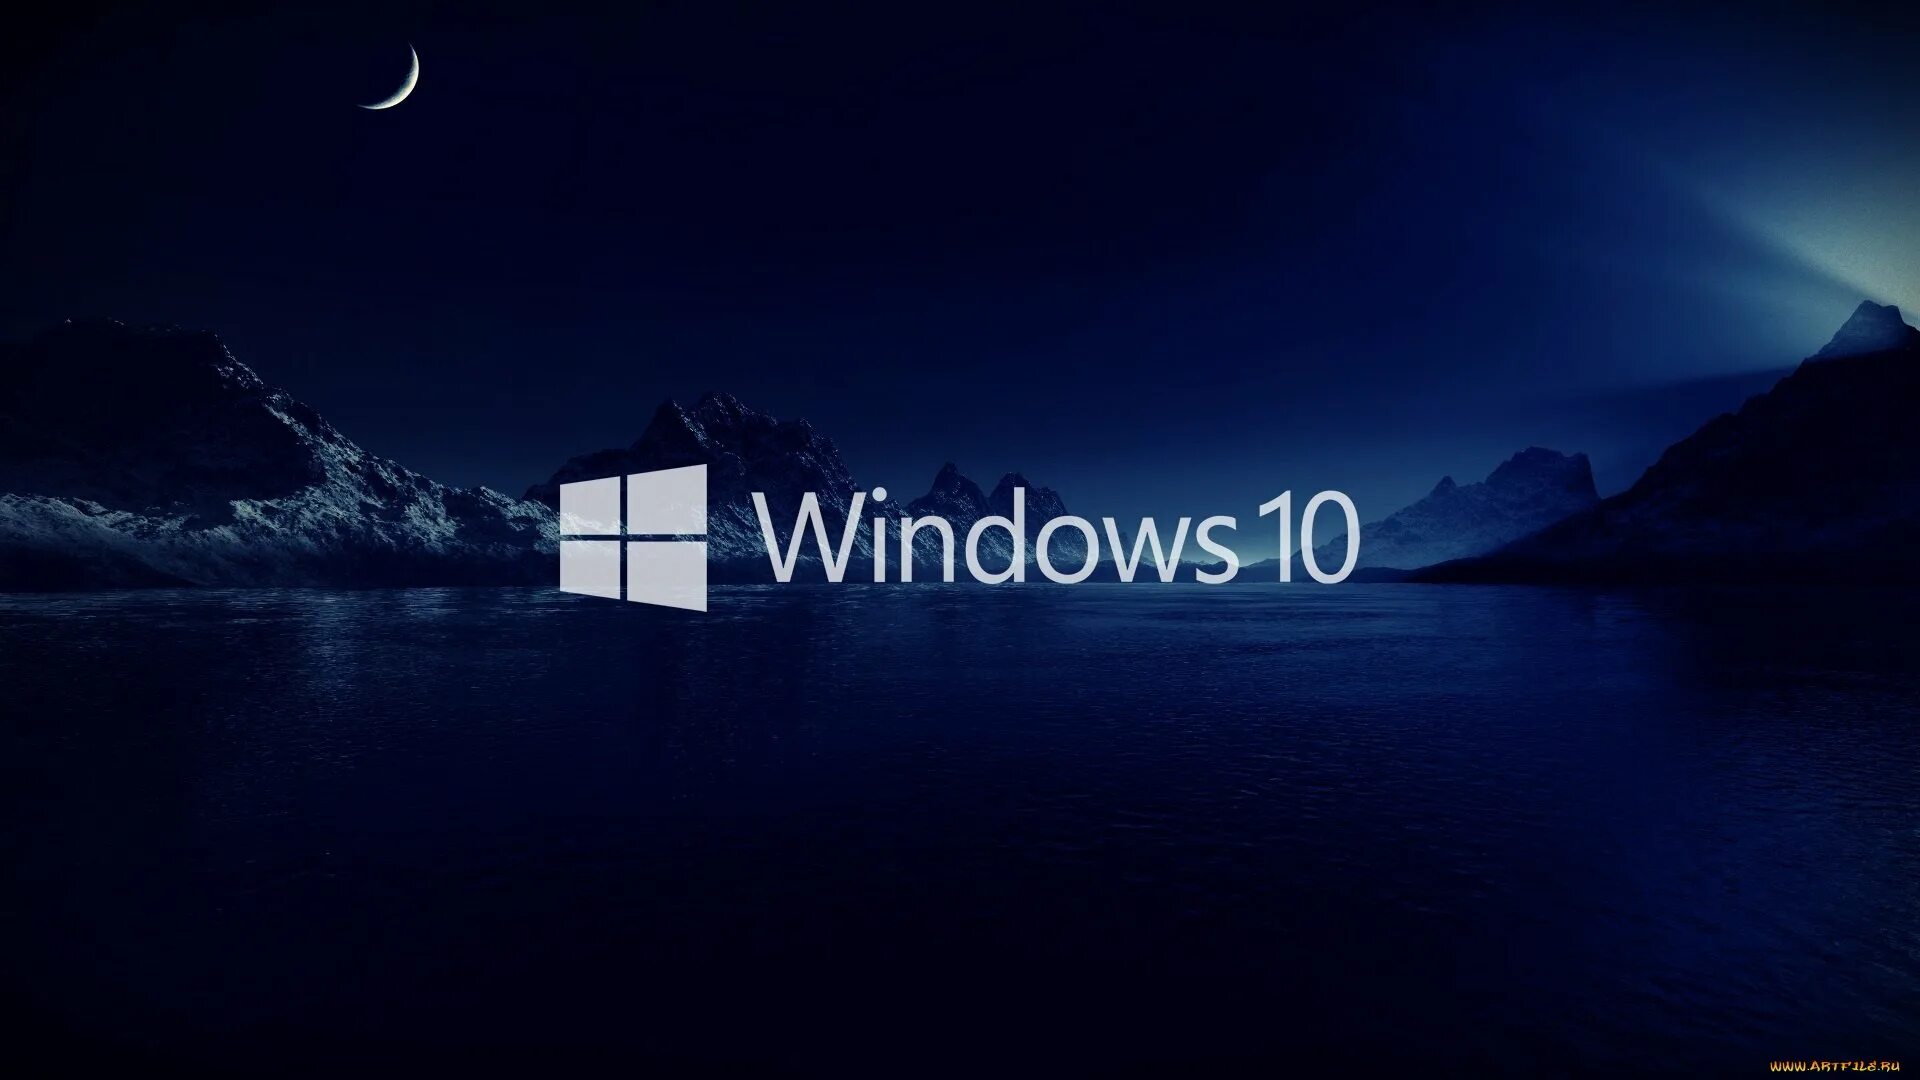 Виндокюус 10. Заставка виндовс 10. Картинки Windows 10. Фоновое изображение Windows 10. Windows 10 av